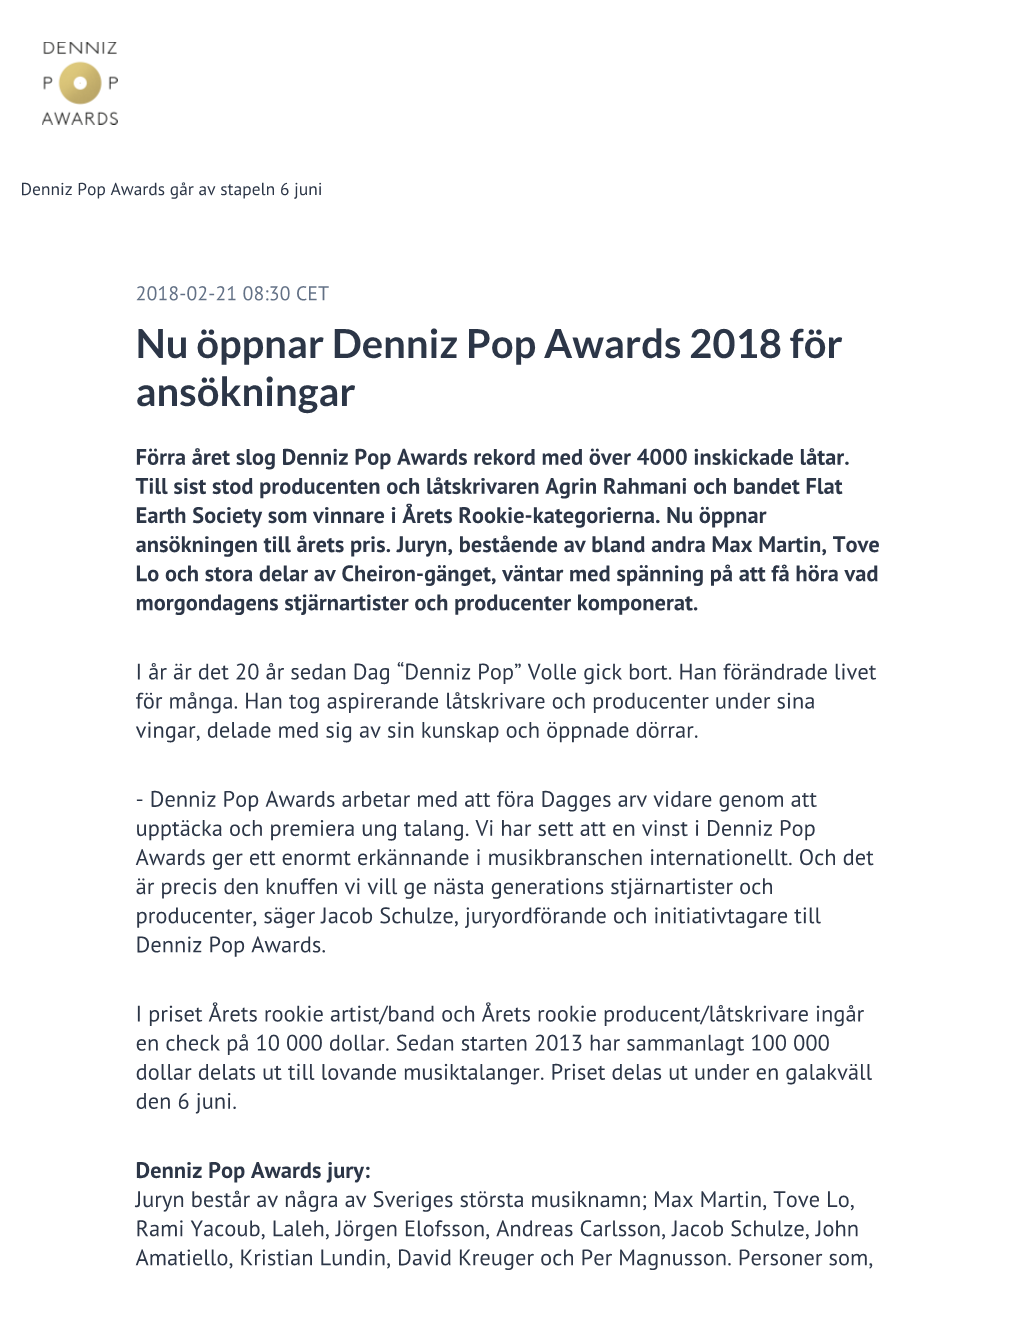 Nu Öppnar Denniz Pop Awards 2018 För Ansökningar